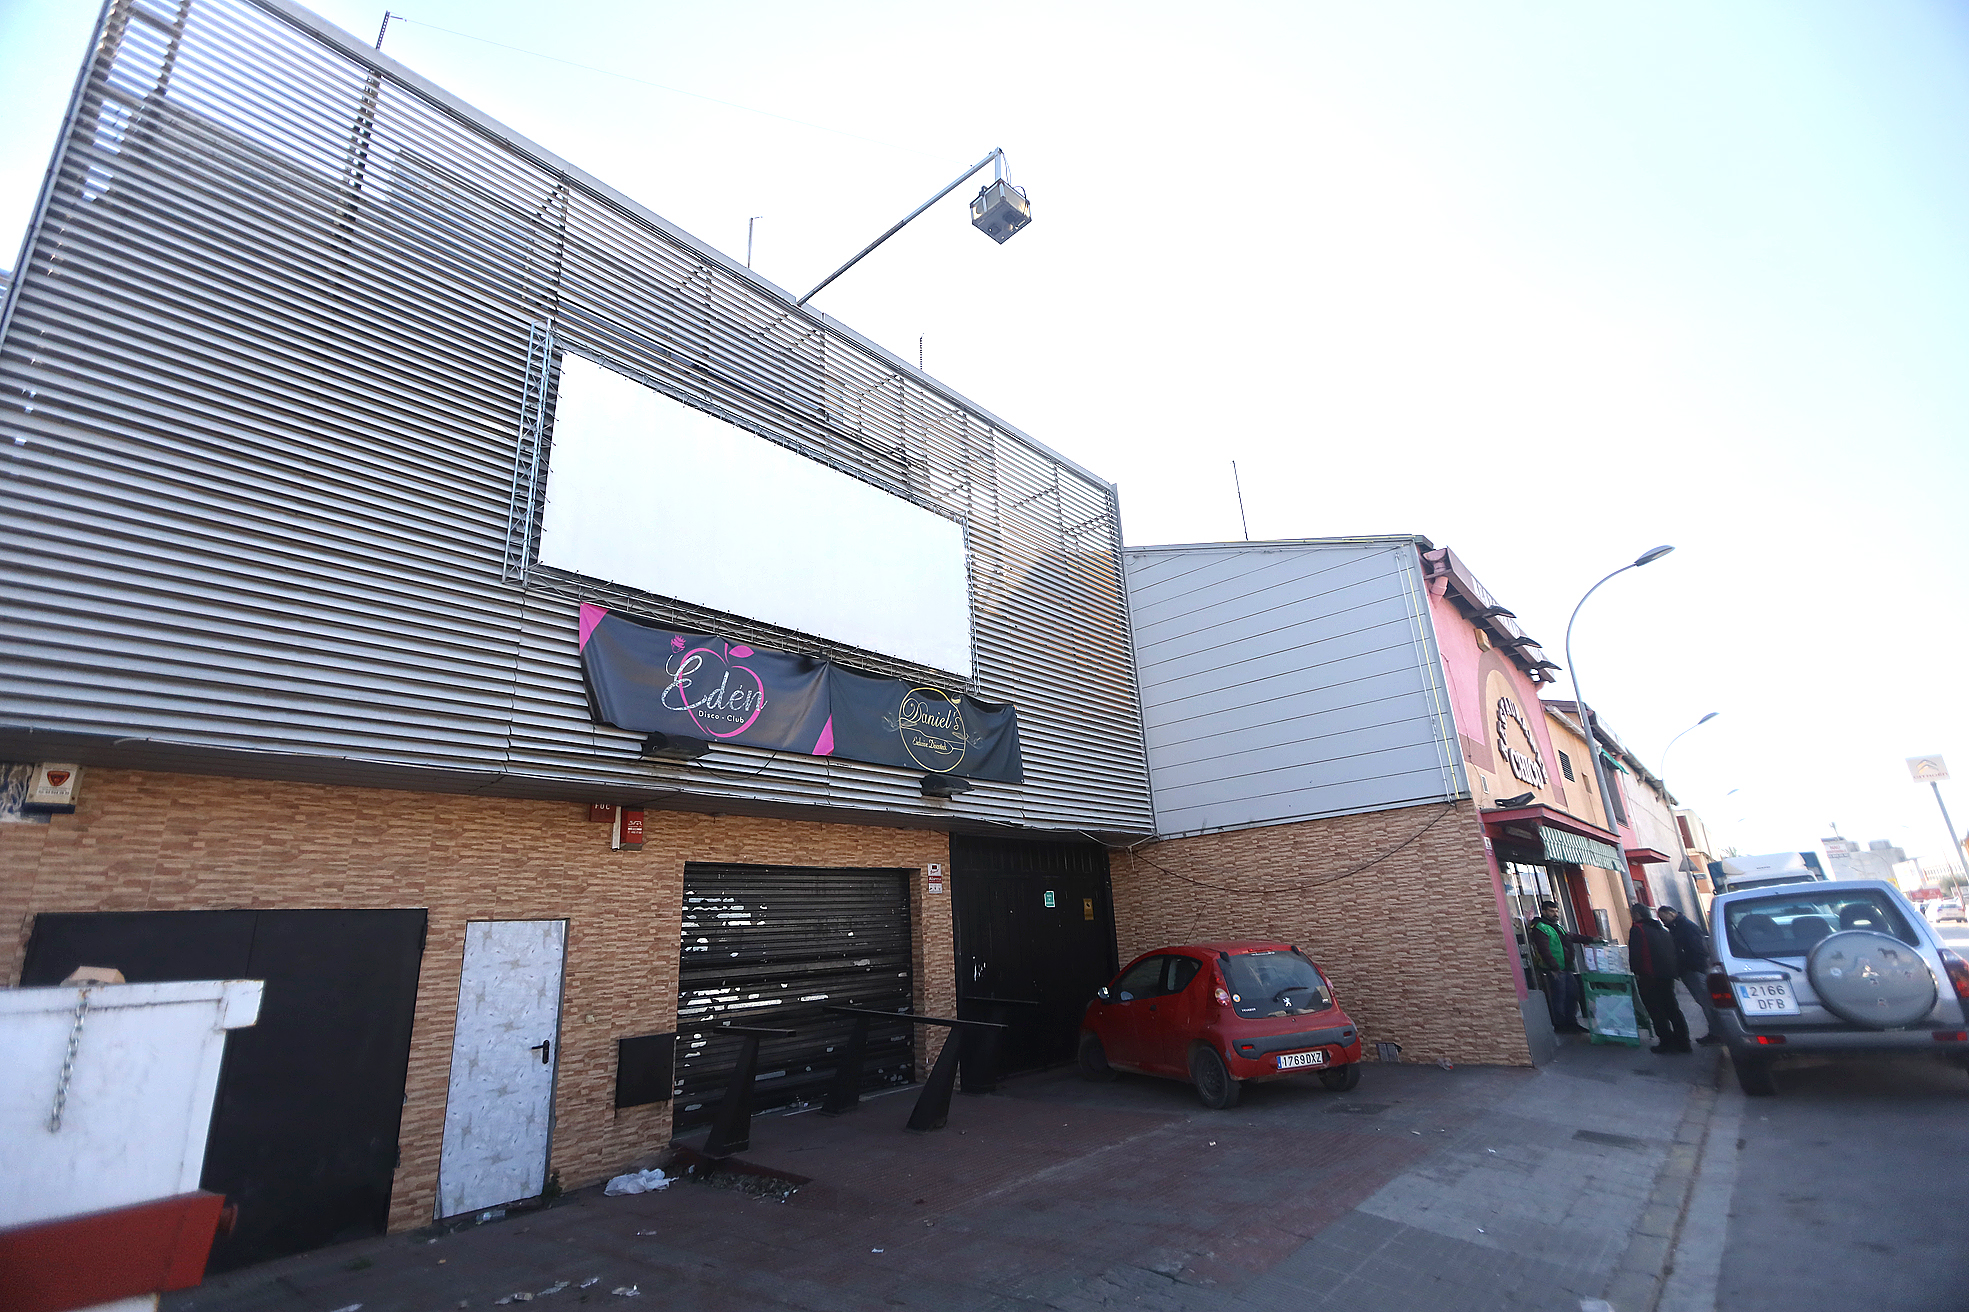 La discoteca està situada al carrer Jordi Camp de Granollers